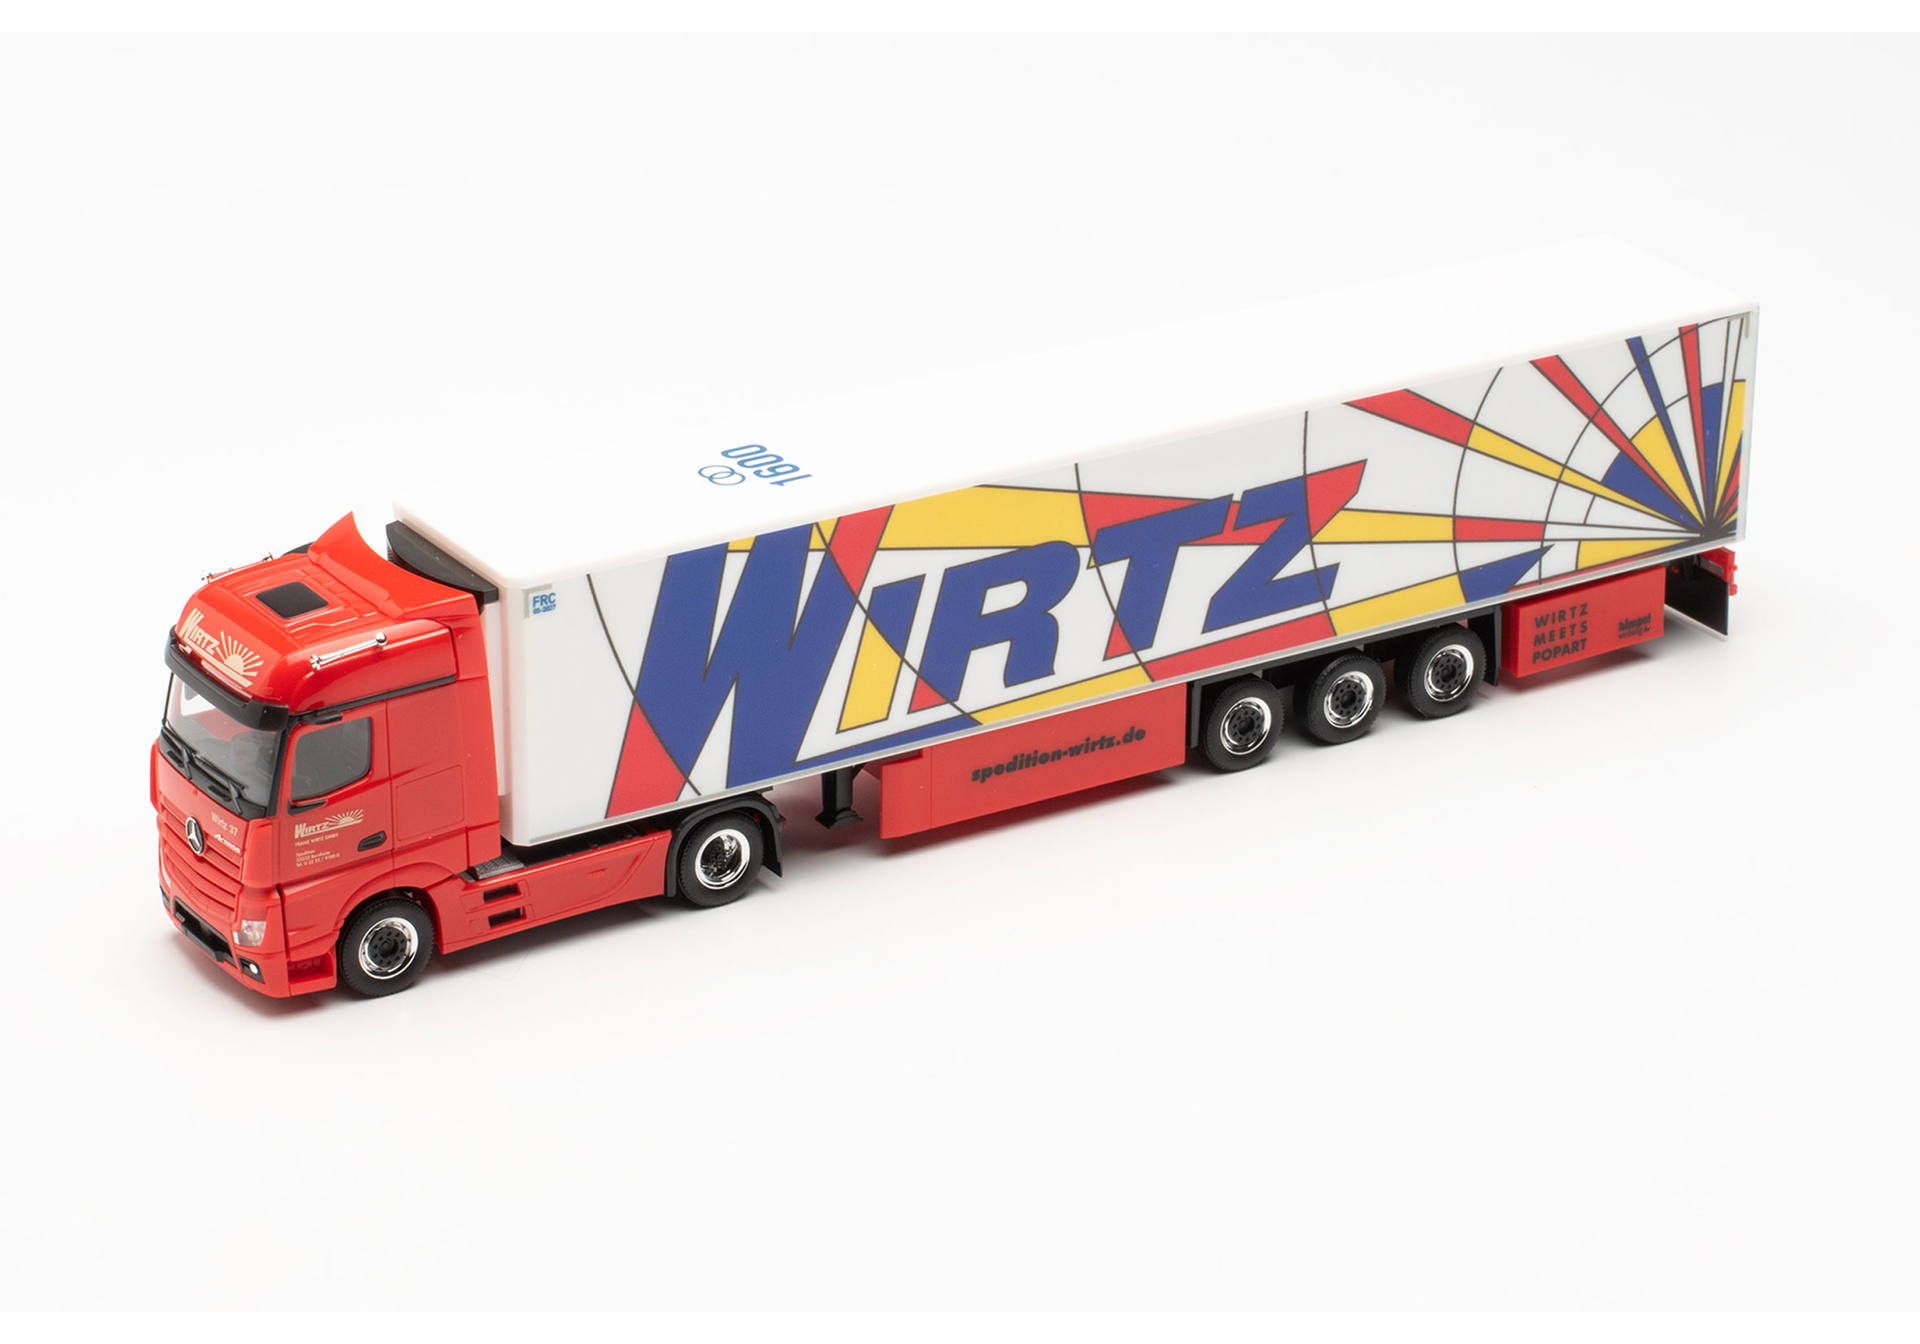 Mercedes-Benz Actros `18 Bigspace 15 meter refrigerated box semitrailer truck „Wirtz Popart“ (North Rhine-Westphalia/Bornheim)